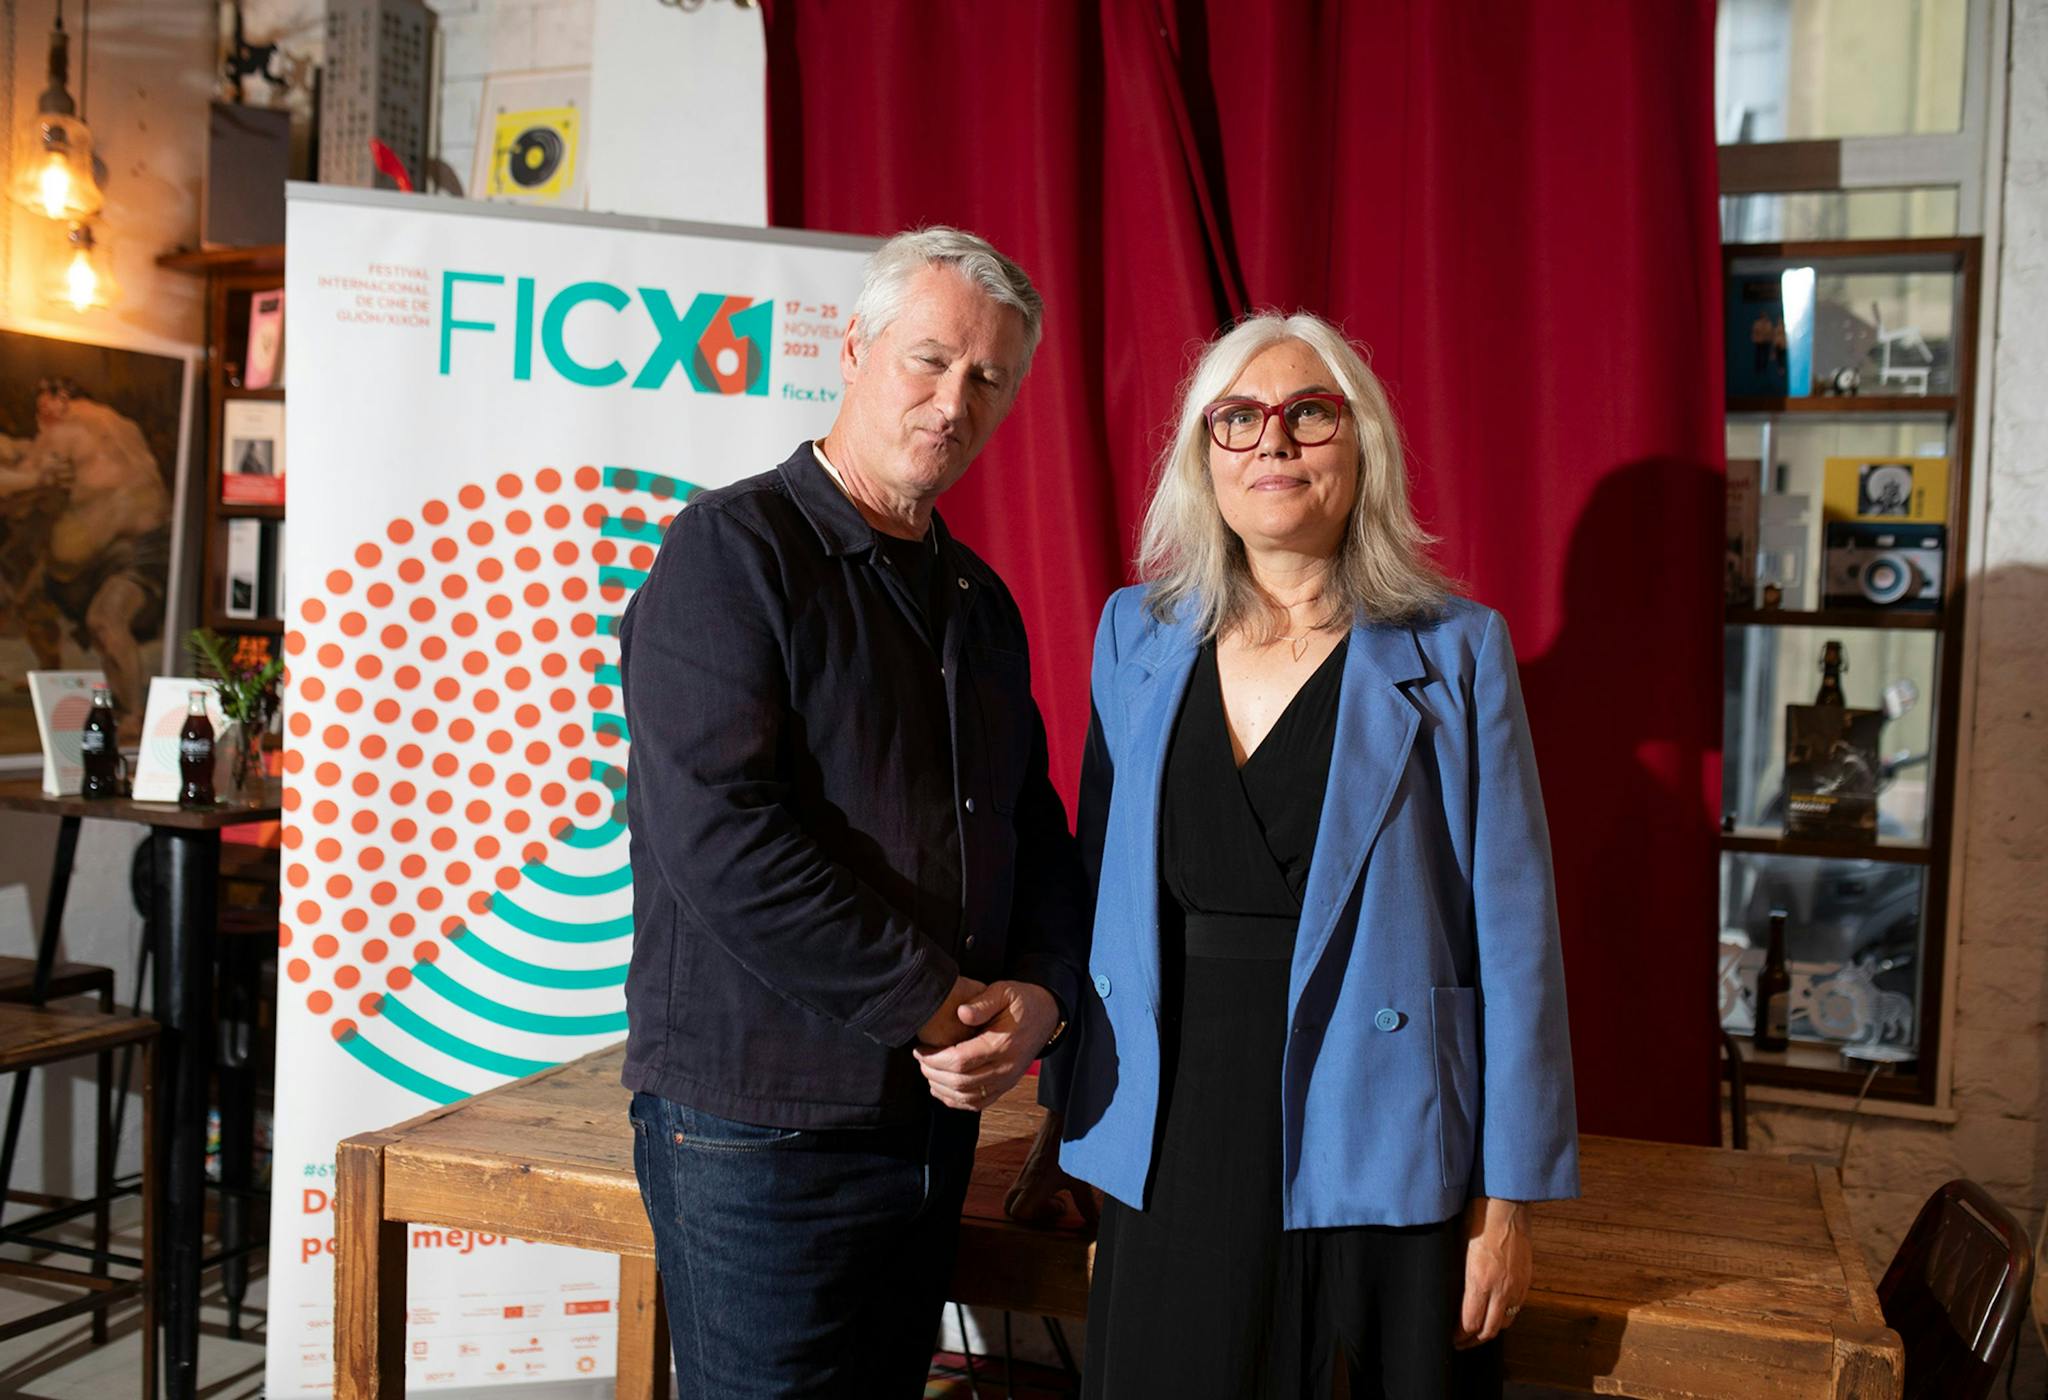  Christine Molloy y Joe Lowlor en el Festival de Gijón, que les dedica una retrospectiva